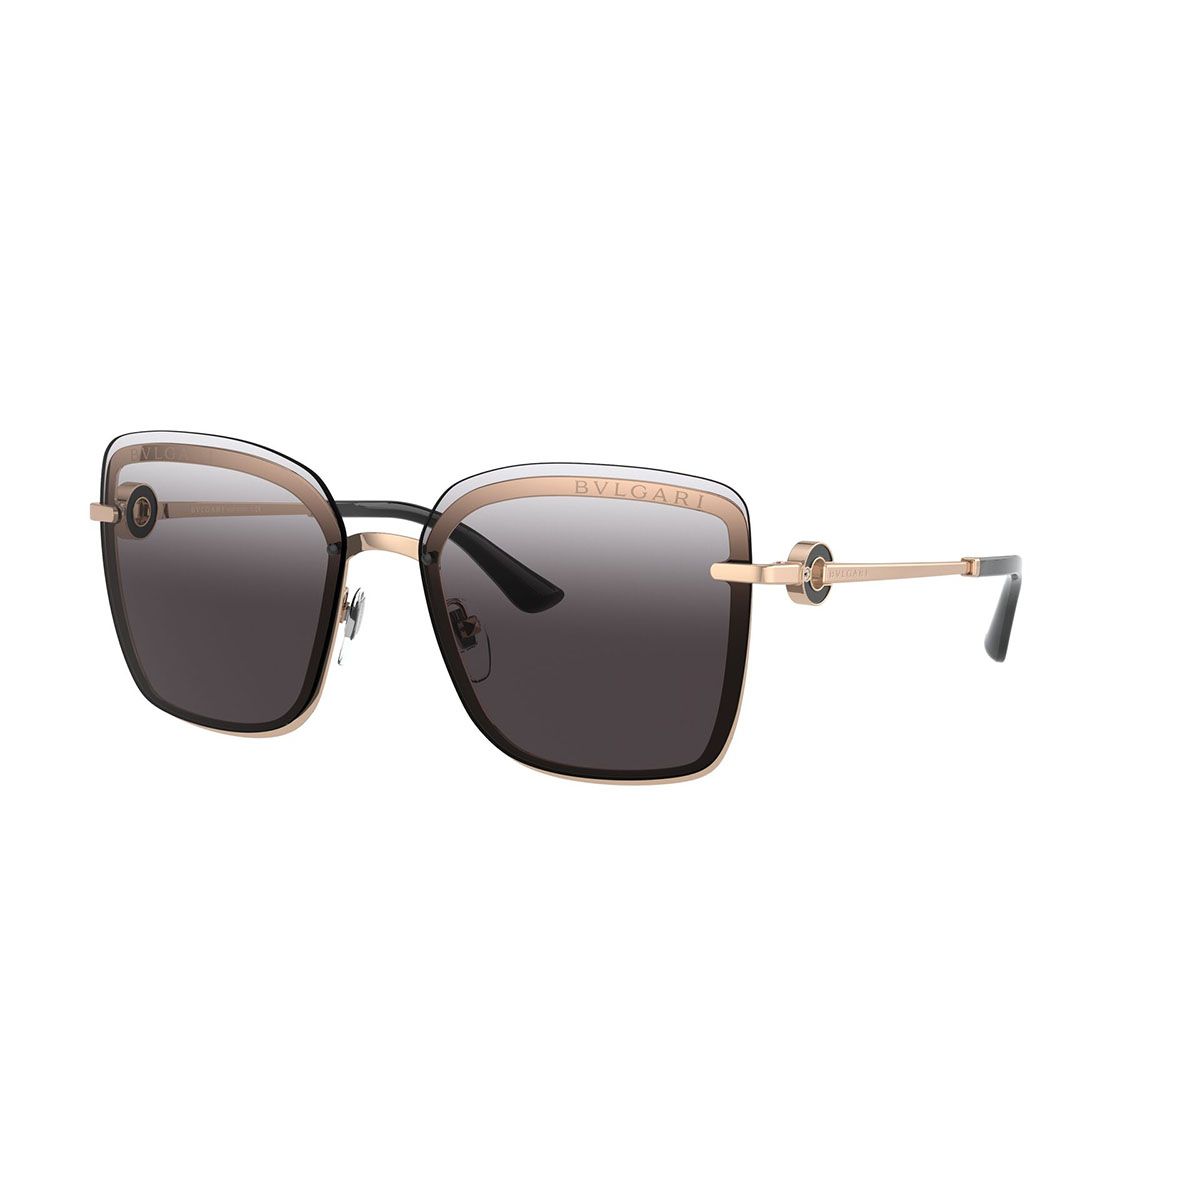 BV6151B Square Sunglasses 20148G - size 59